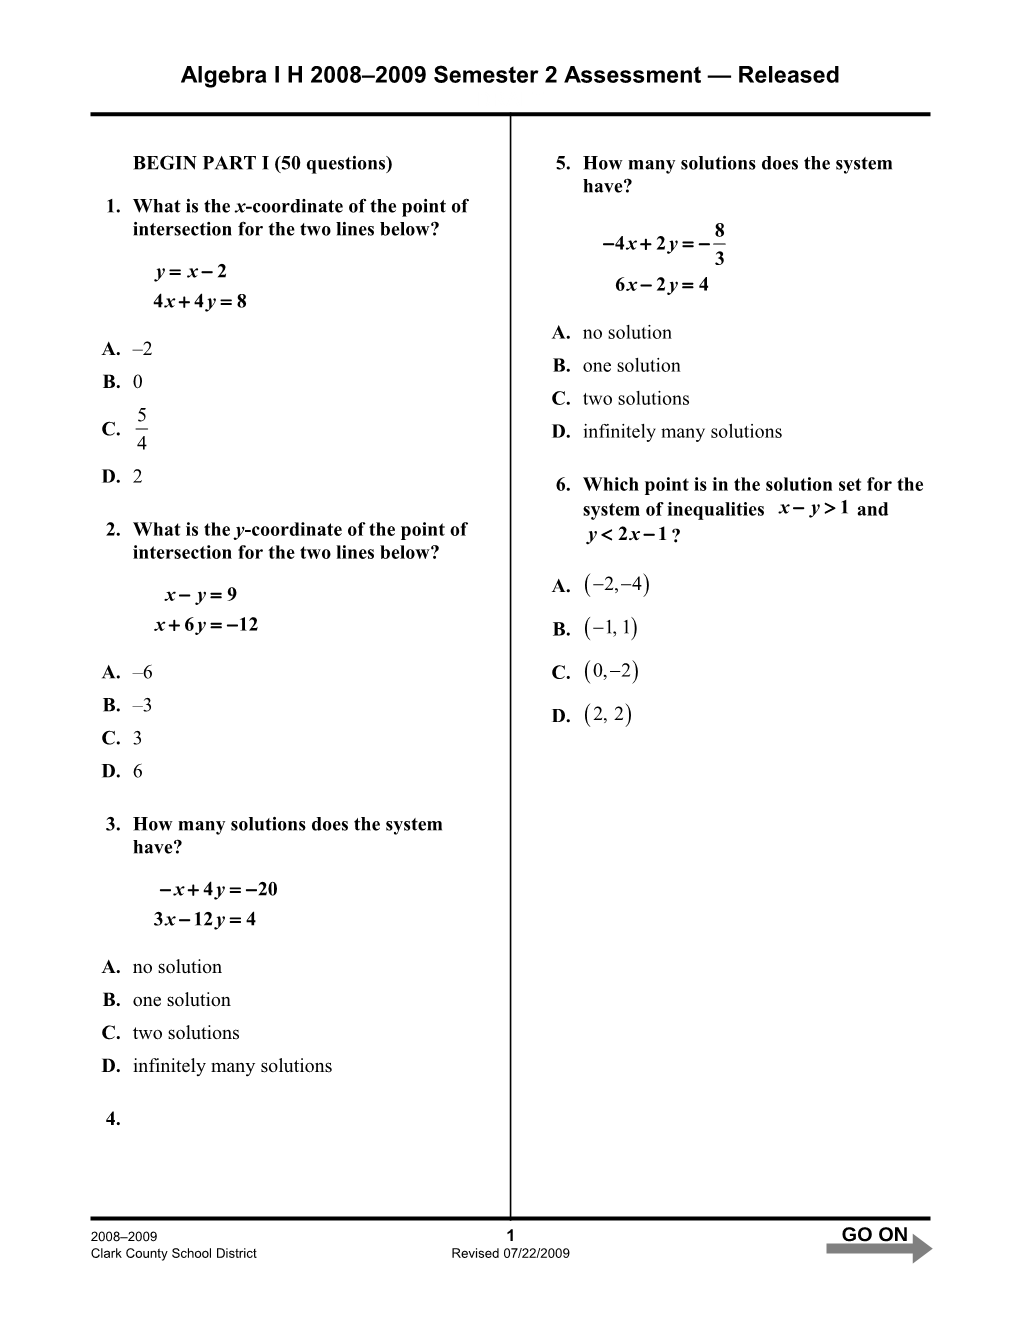 Algebra I H 2008 2009 Semester 2 Assessment Released